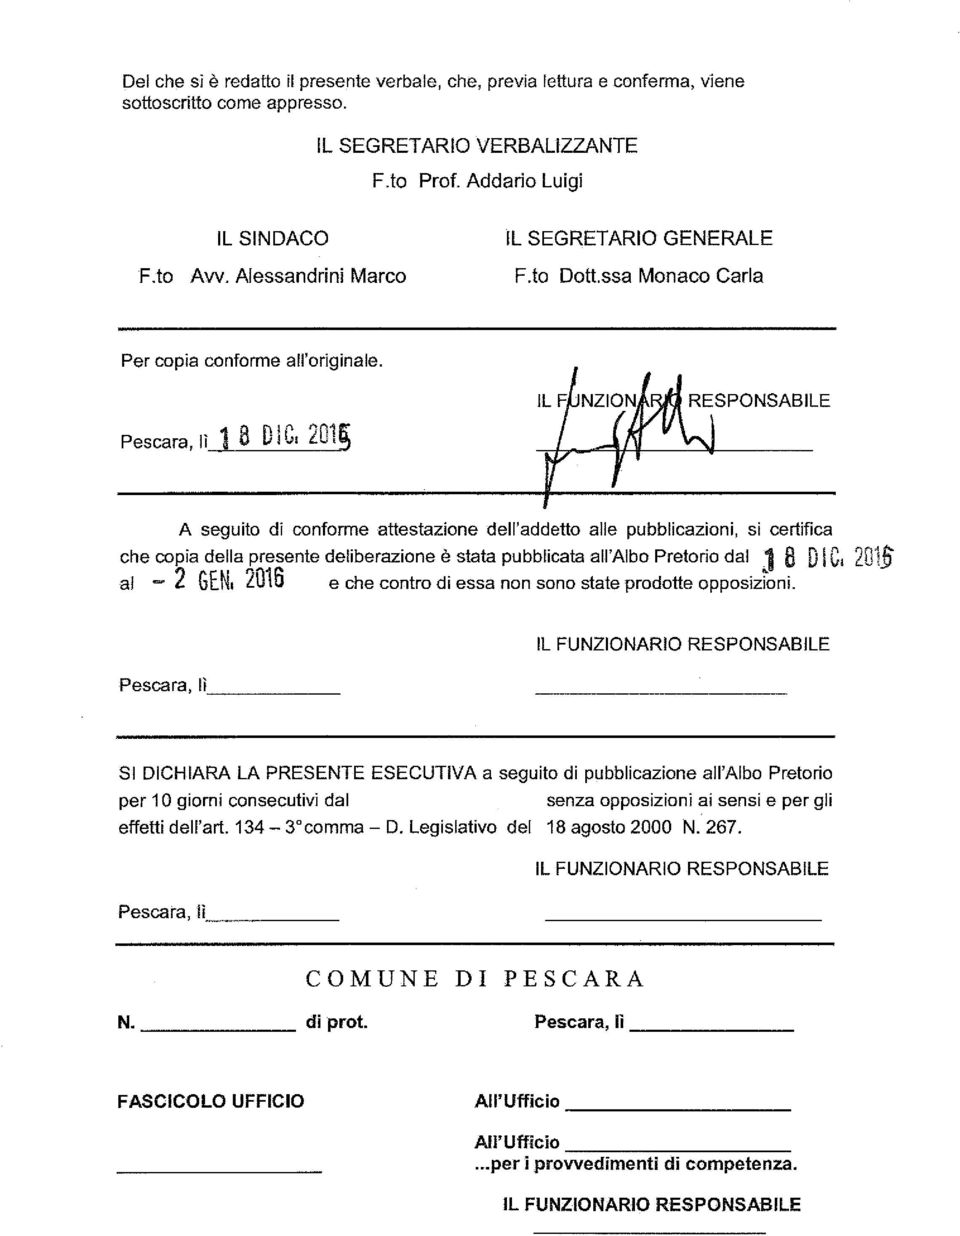 Pescara, lì i 8 DIC, 201~ A seguito di conforme attestazione dell'addetto alle pubblicazioni, si certifica che copia della presente deliberazione è stata pubblicata all'albo Pretorio dal 1 8 DIC, 201.